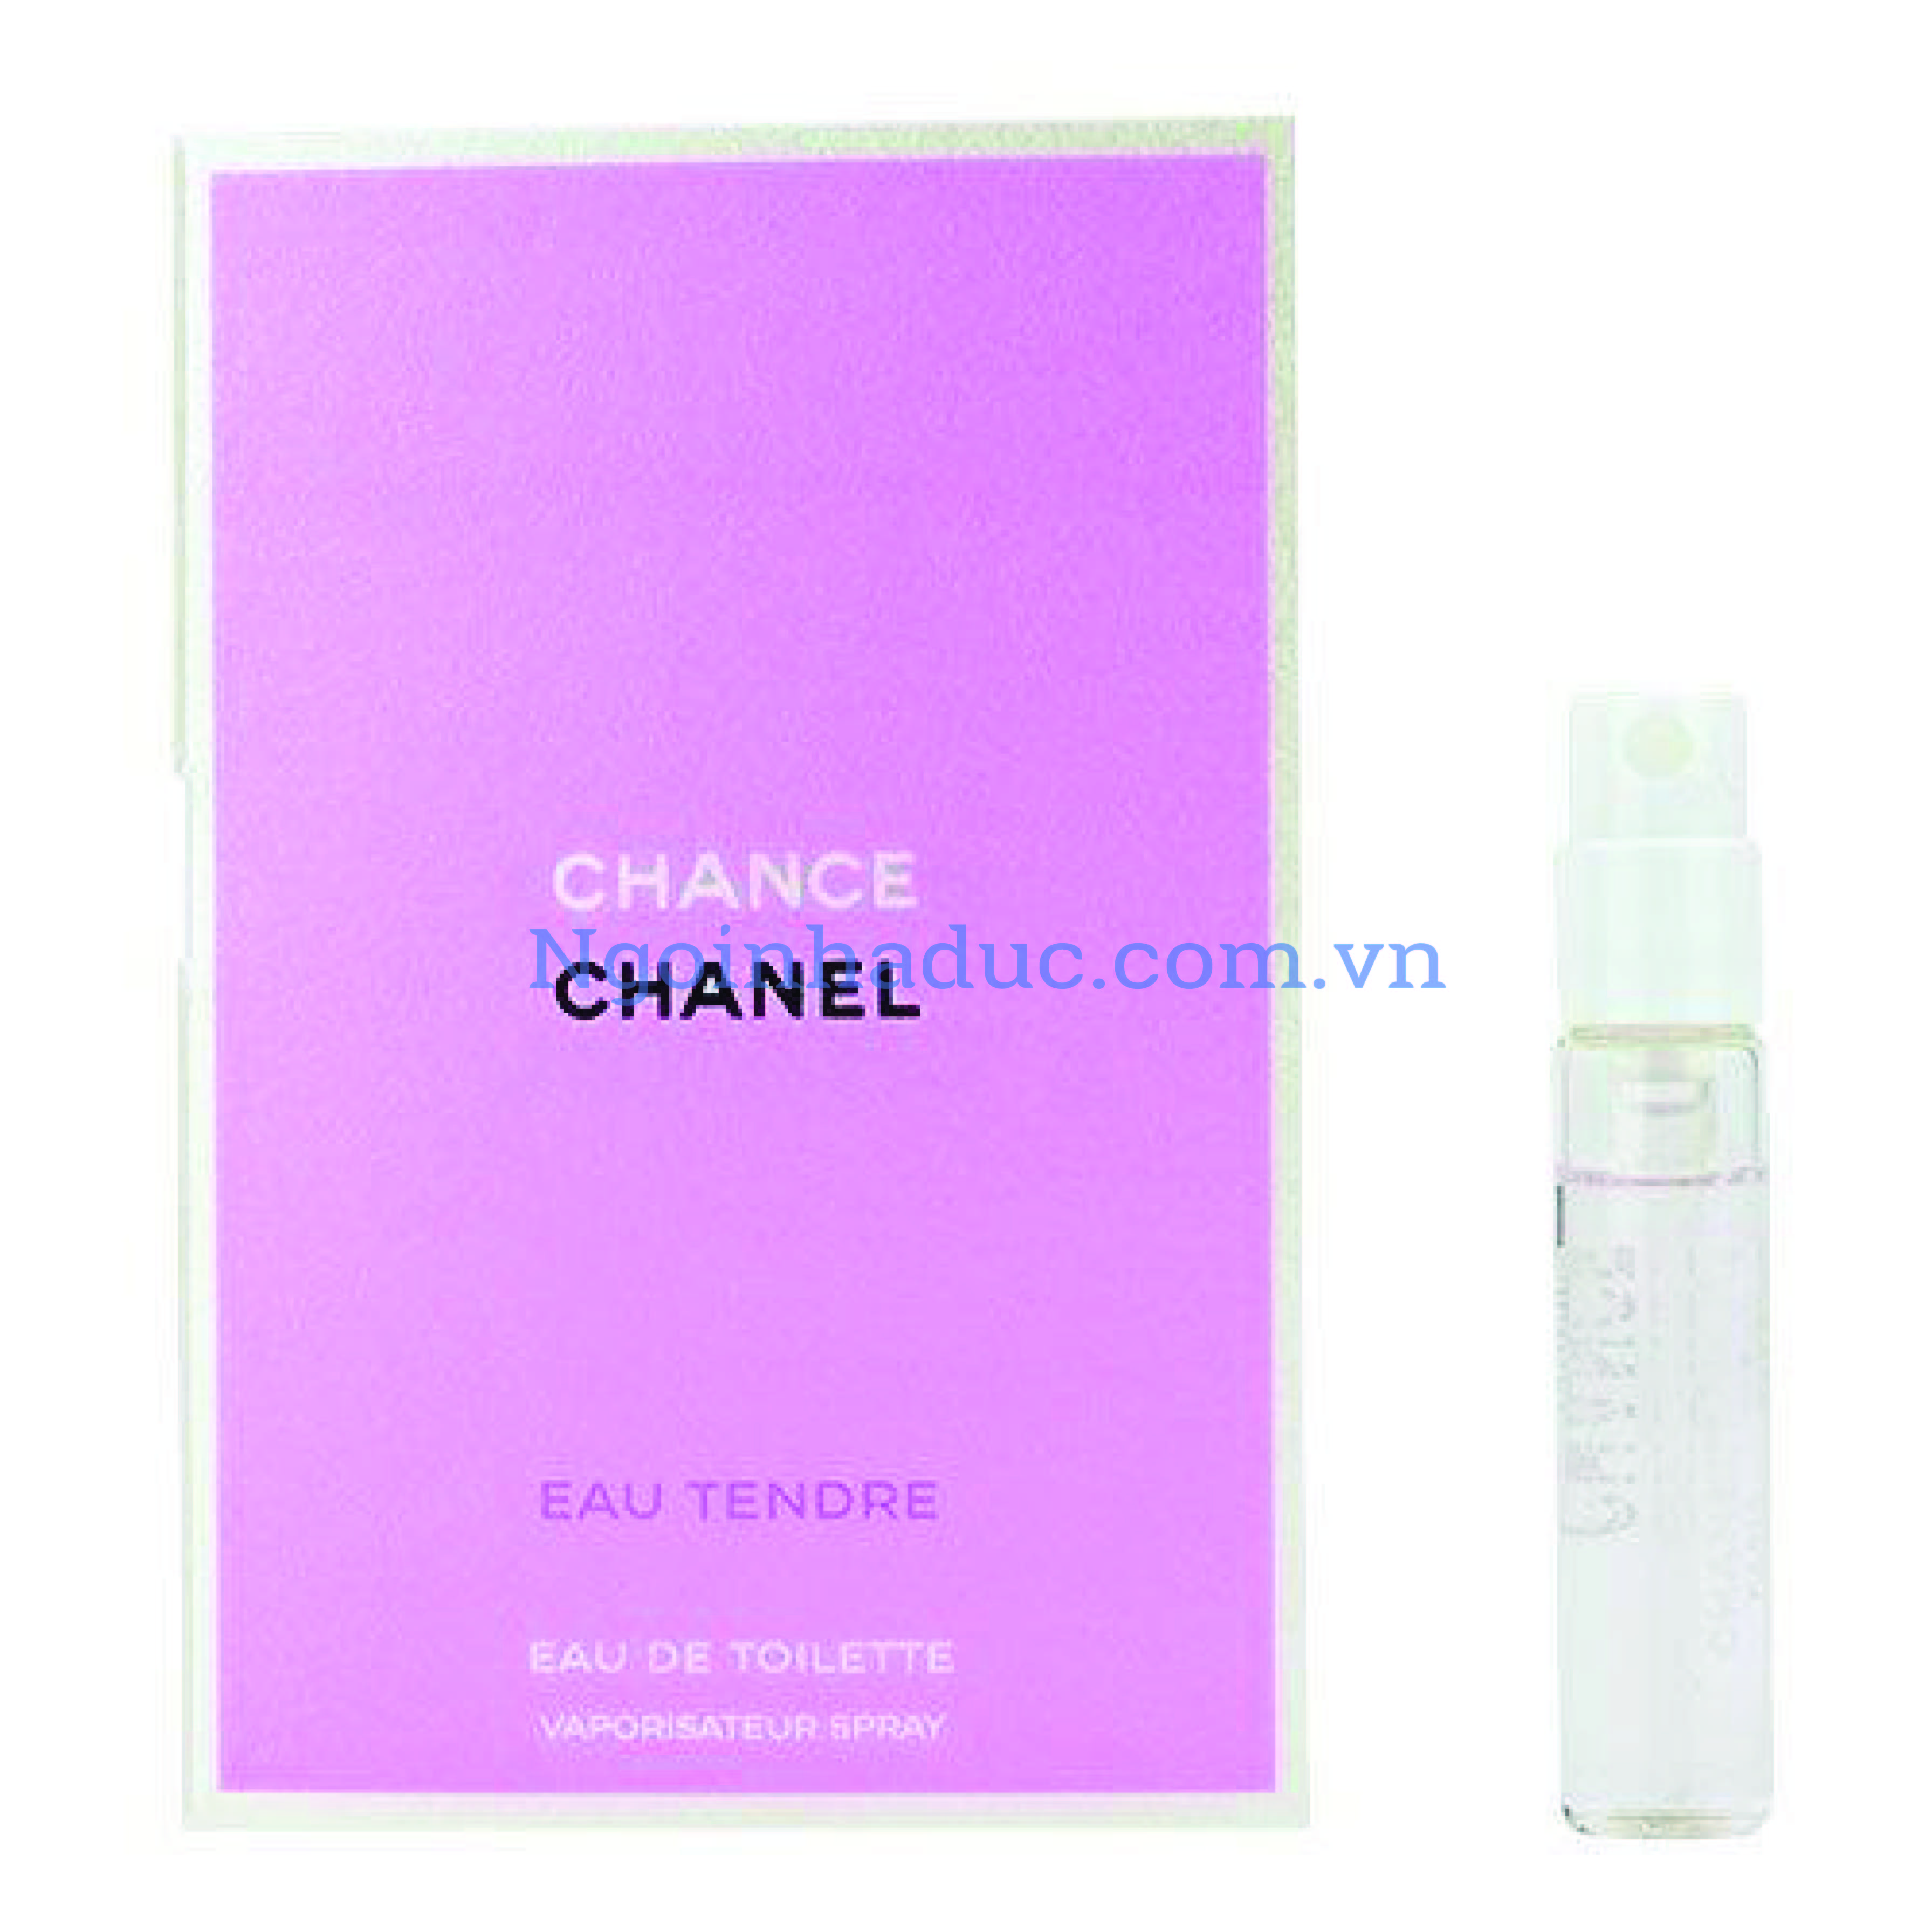 Nước hoa mini Chance Chanel hồng 2ml